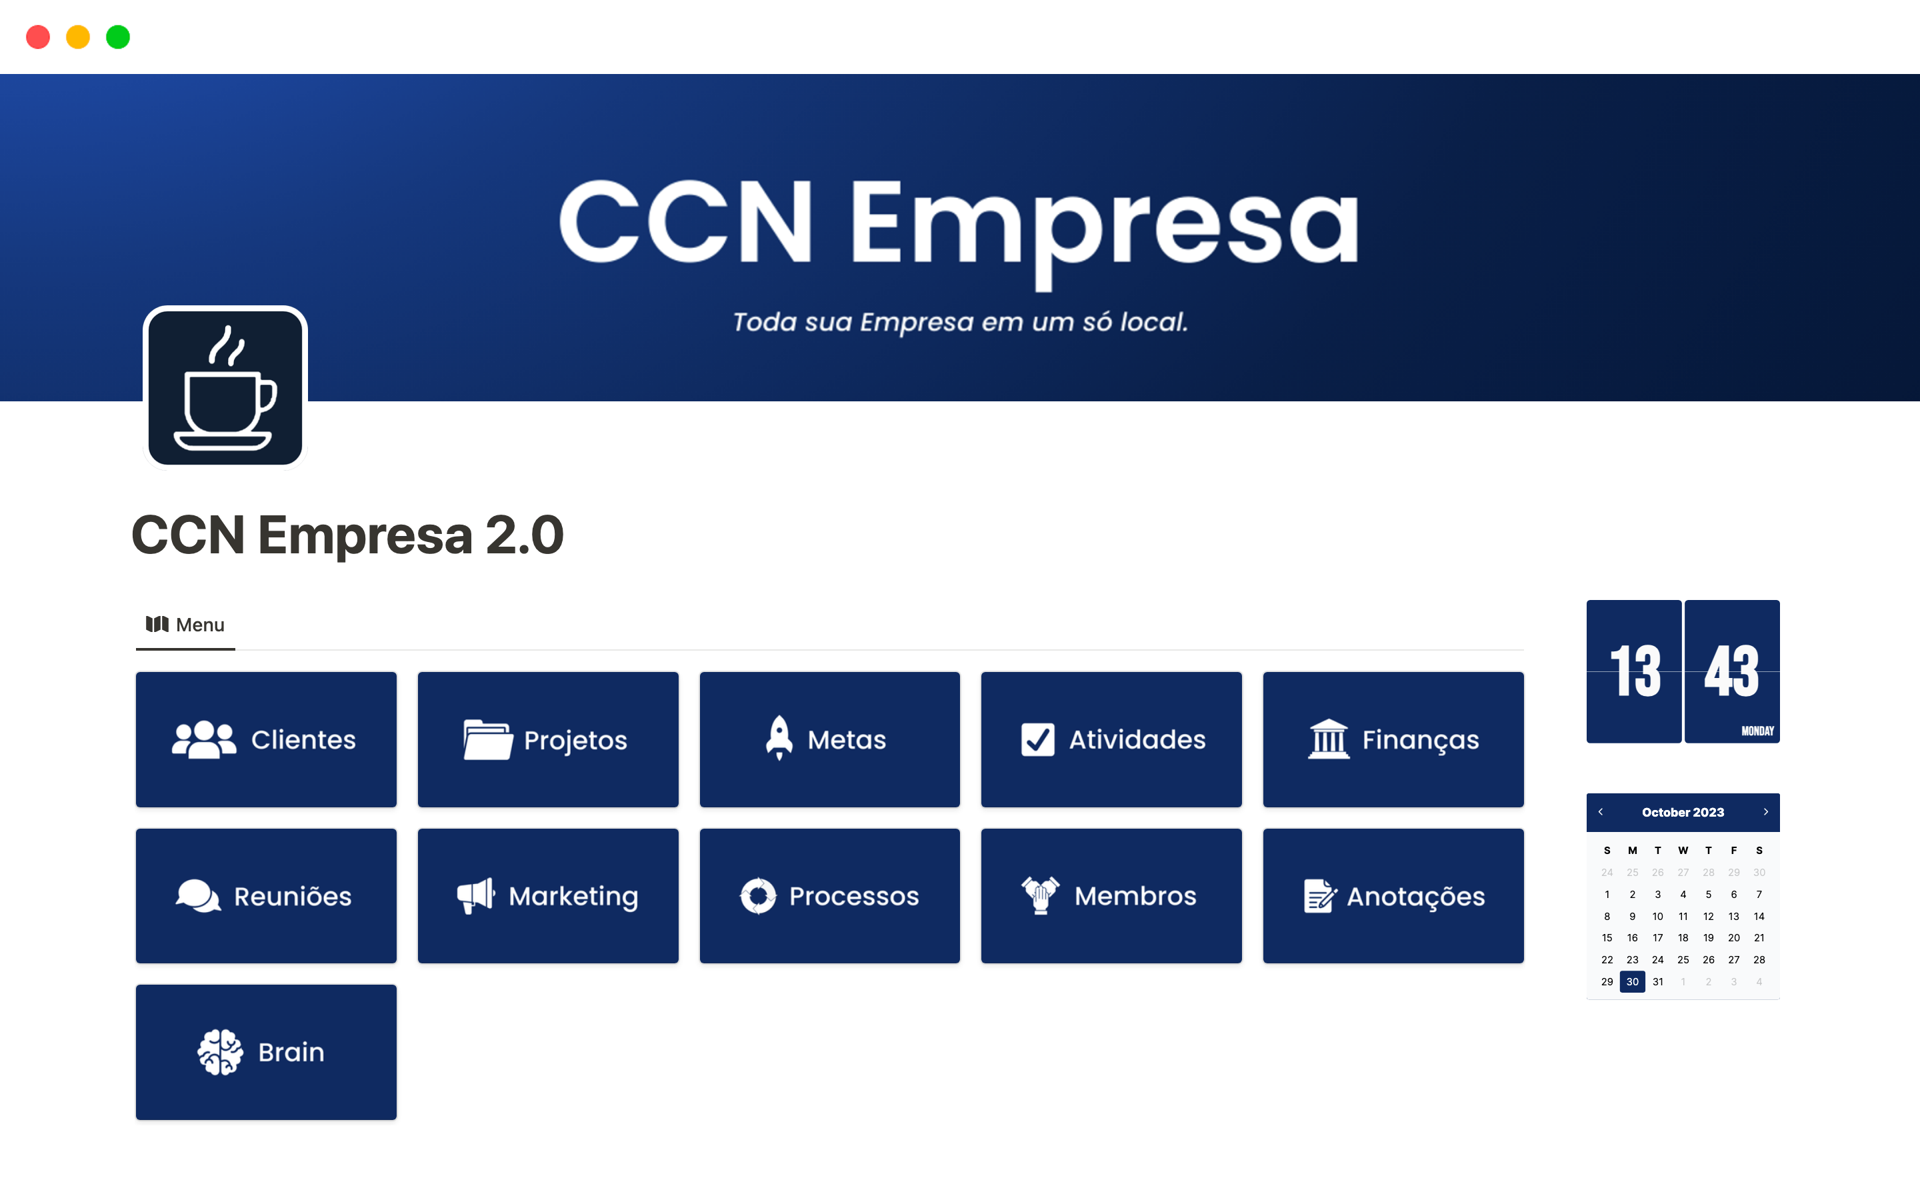 Aperçu du modèle de CCN Empresa